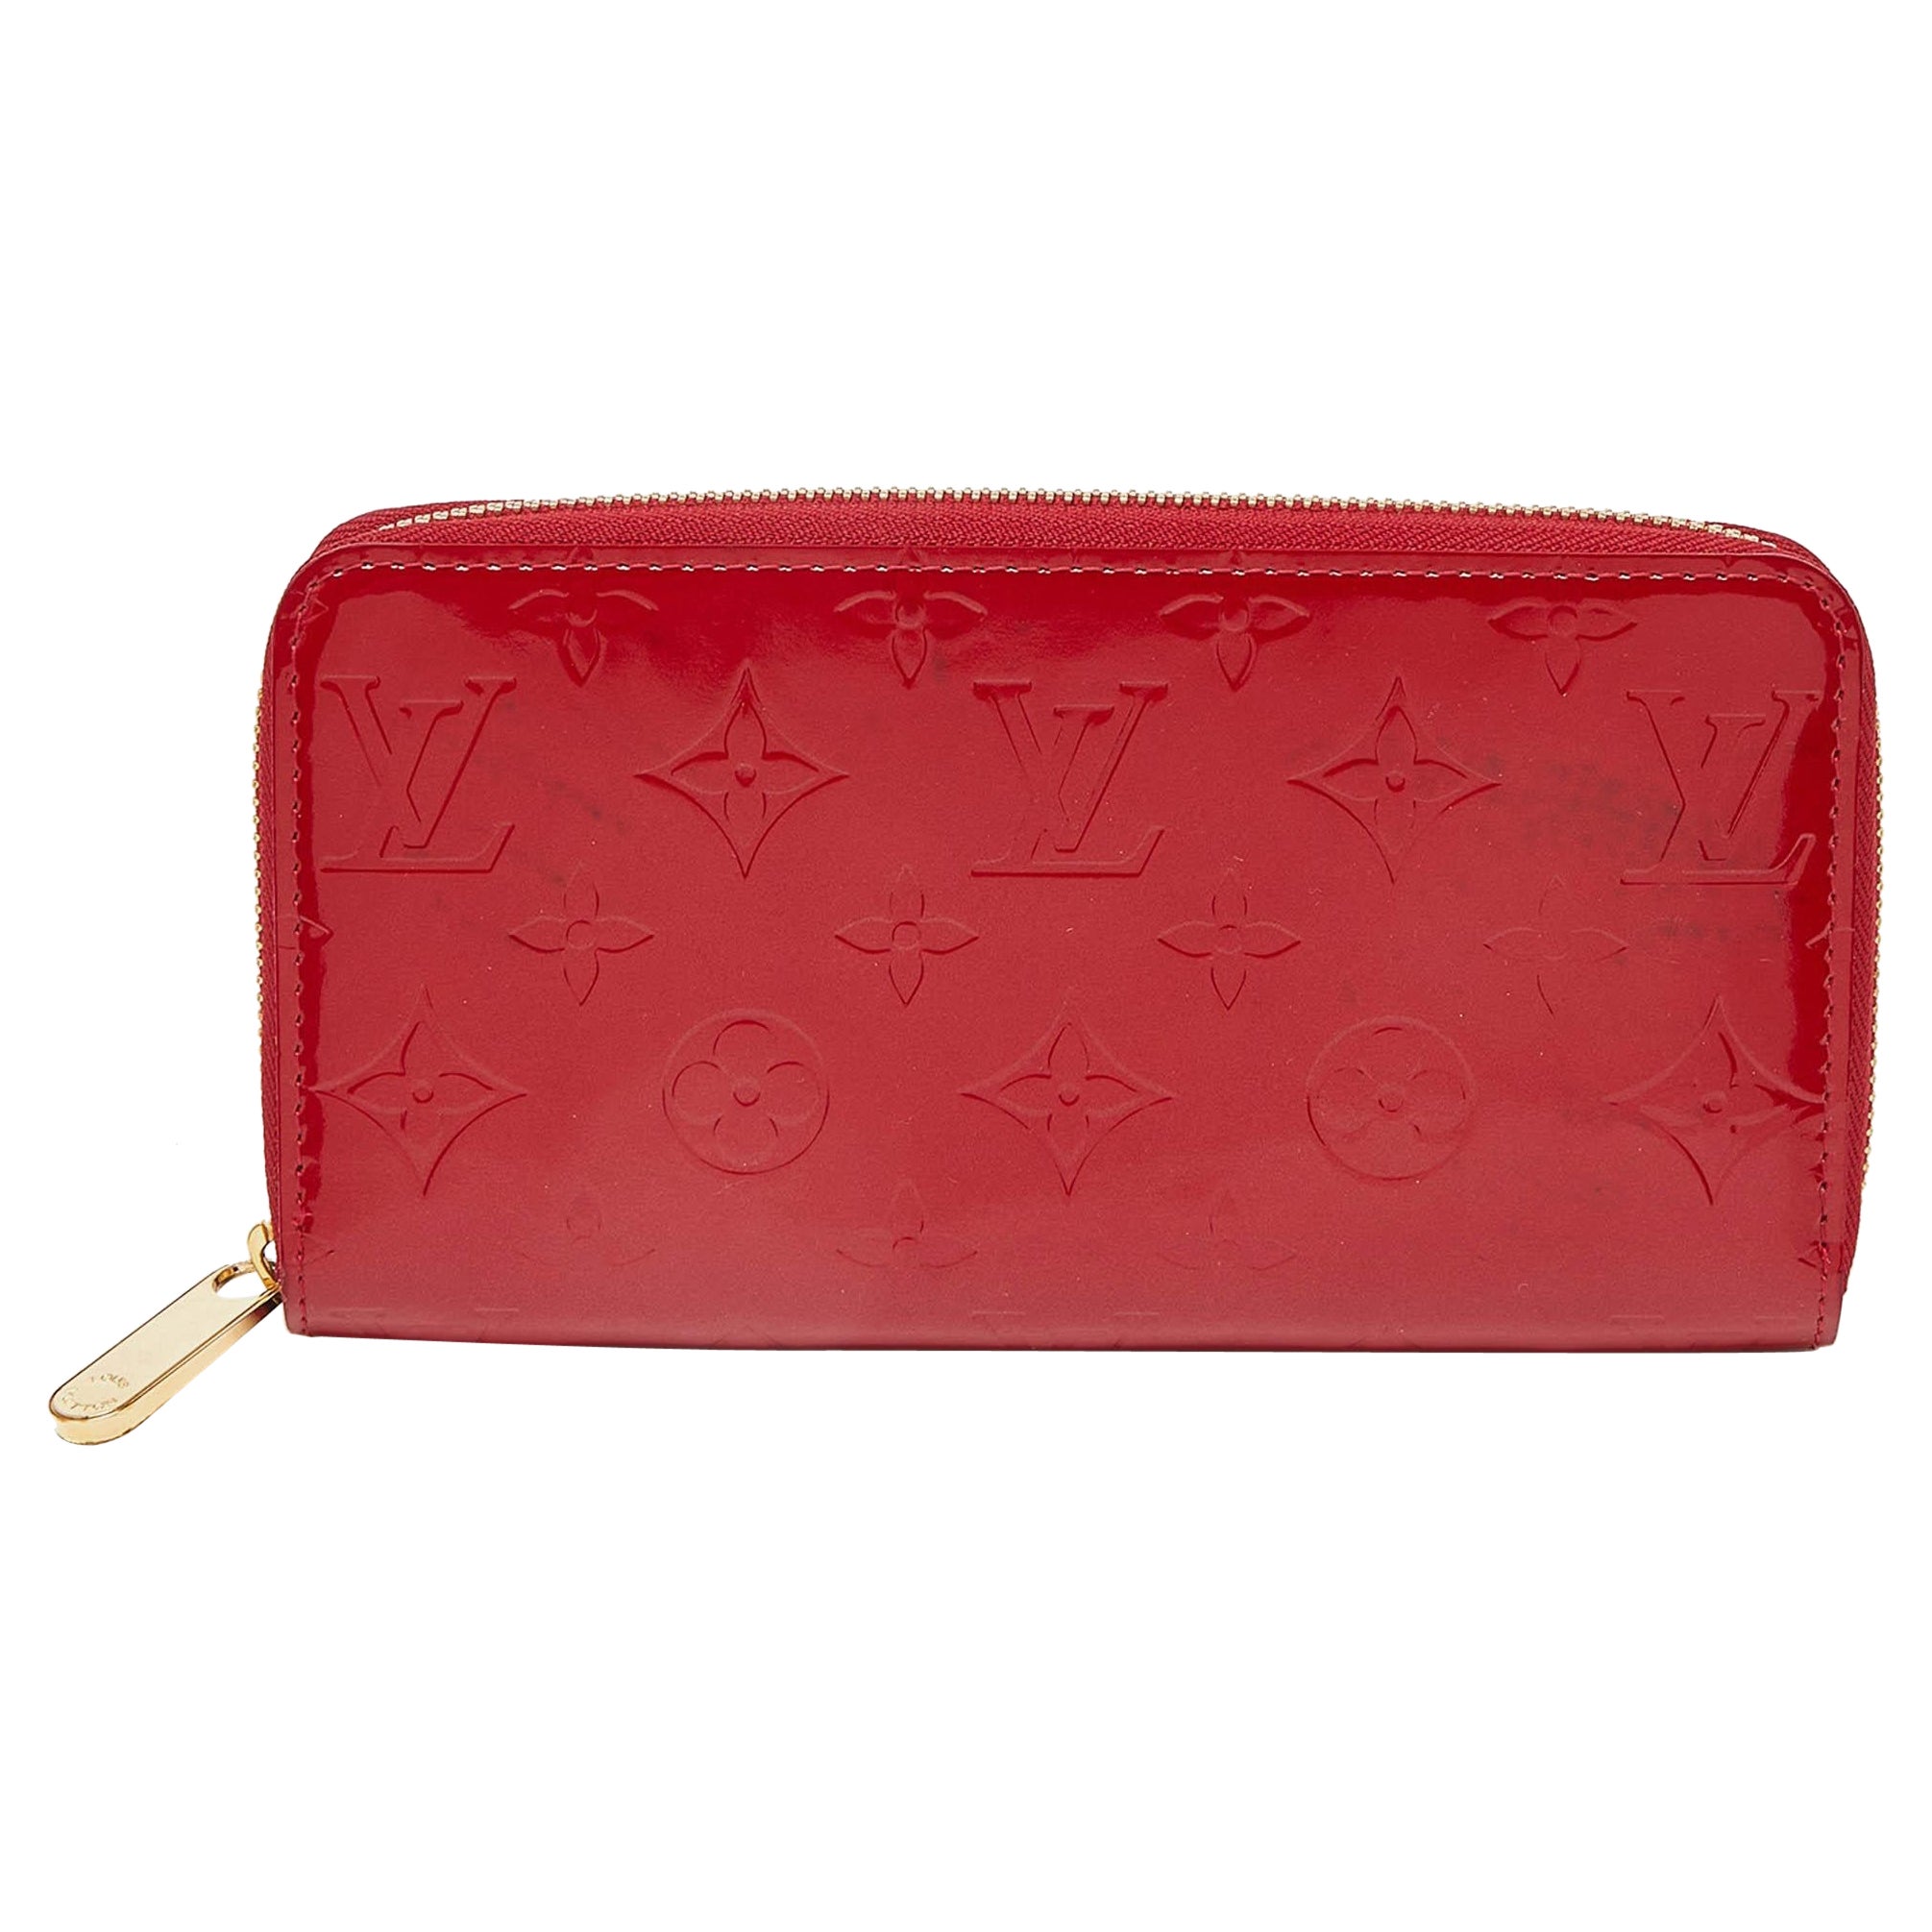 How do I authenticate a Louis Vuitton wallet?